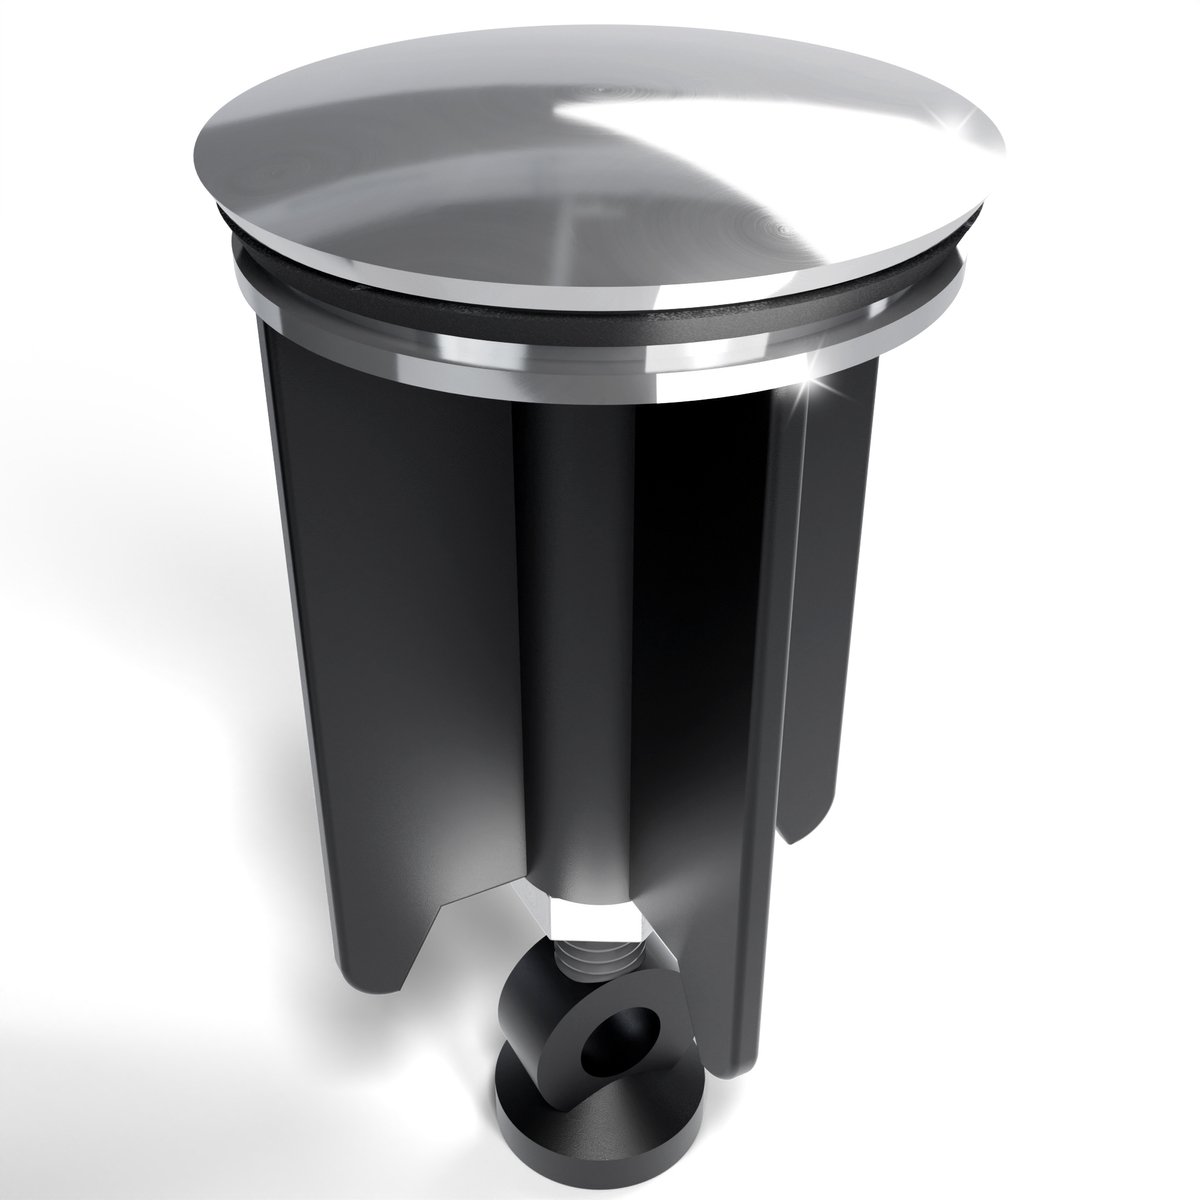 Minismus Universele Badkamer Wastafel afvoerstop / Bidet afvoerplug 40 mm Wastafelstop - Metaalstop voor Wastafel Garnituur - Pop-up Wastafel Afvoerplug - Chroom - Minismus